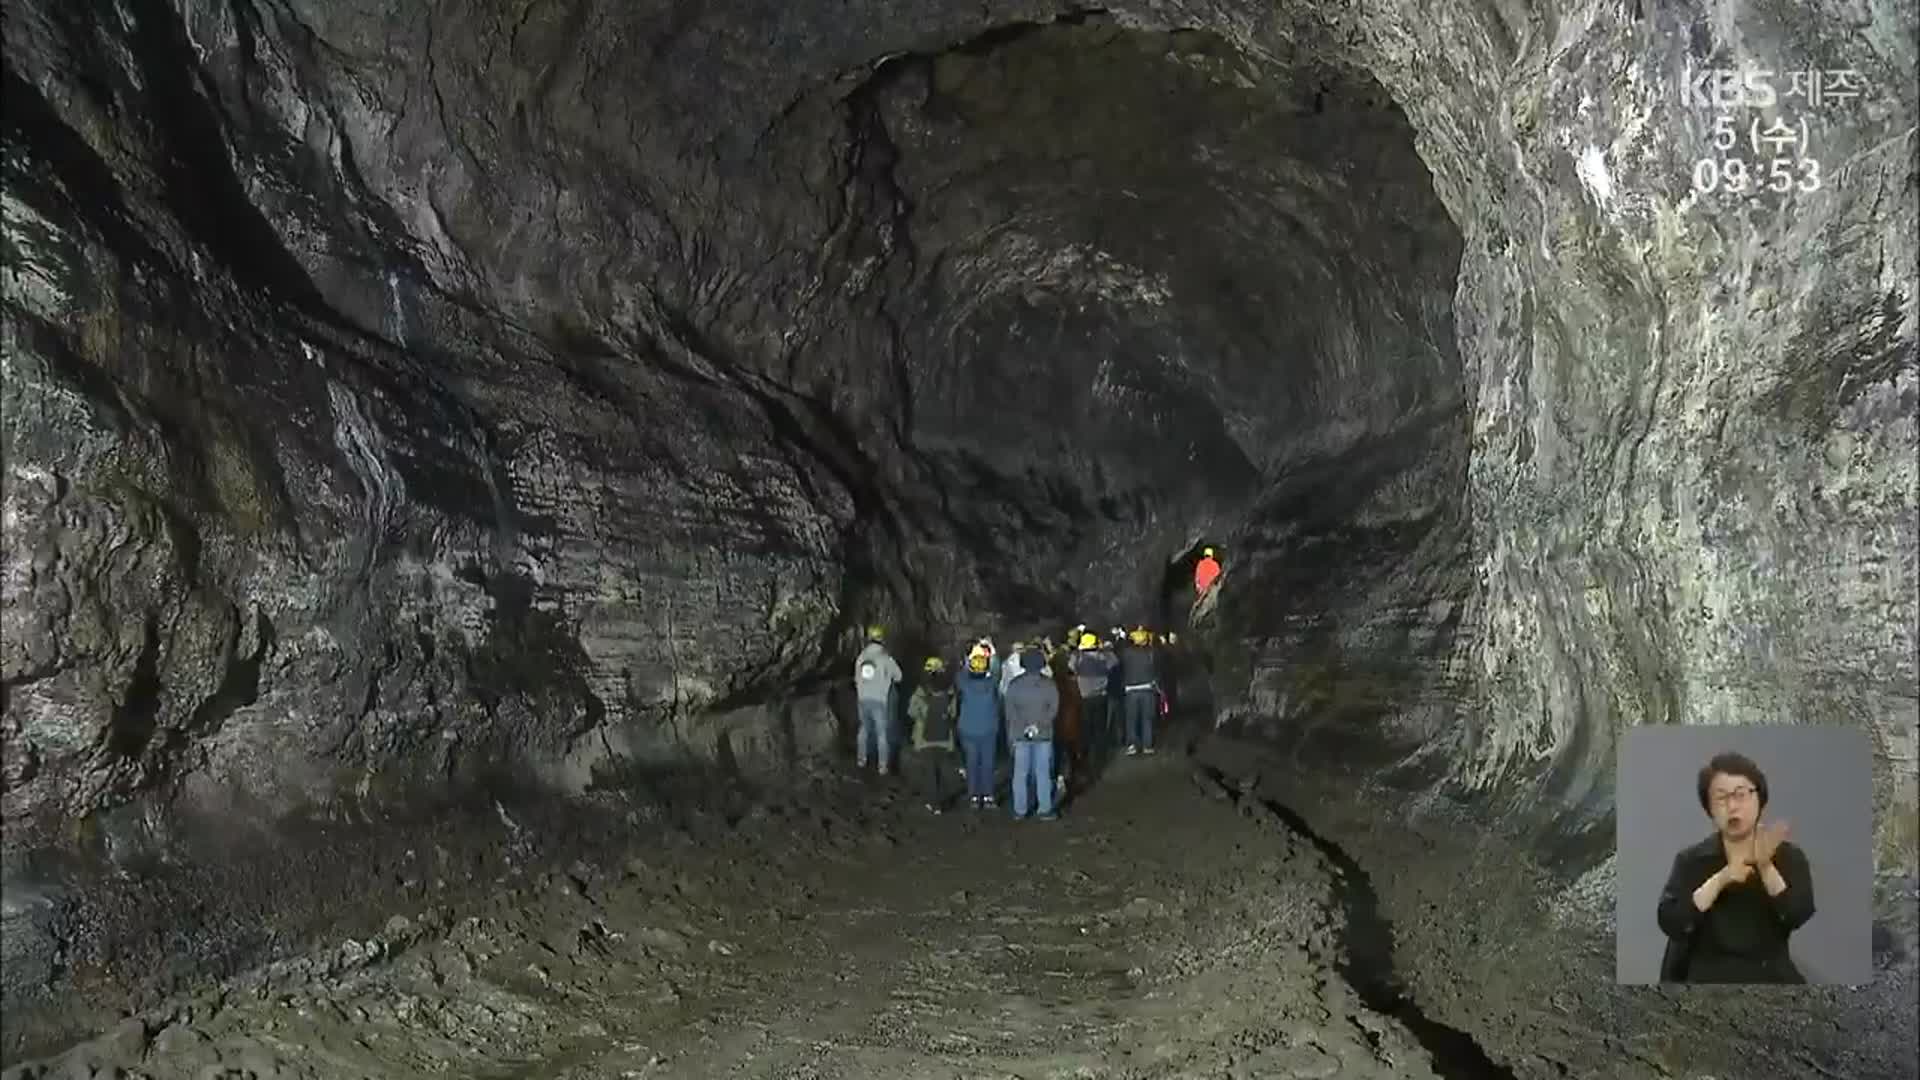 용암이 빚어낸 동굴의 자태 ‘비공개 구간 공개’